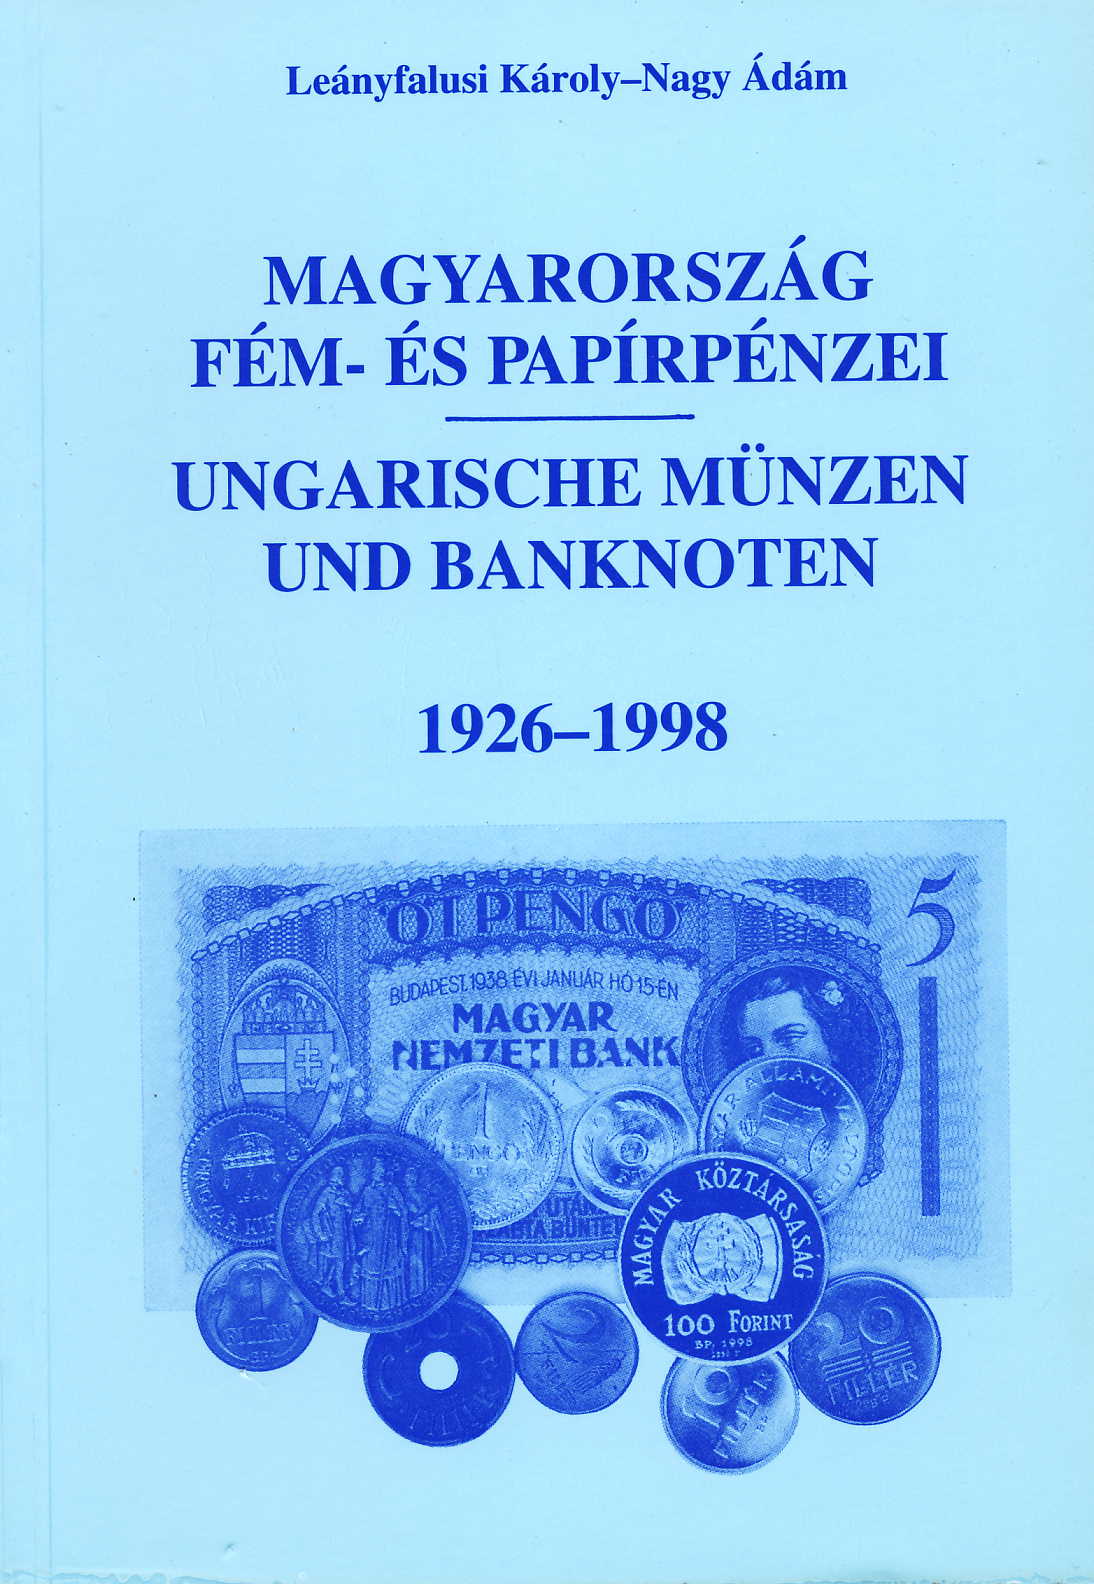 Leánfalusi/Nagy Magyarorszag fem - es papirpenzei / Ungarische M